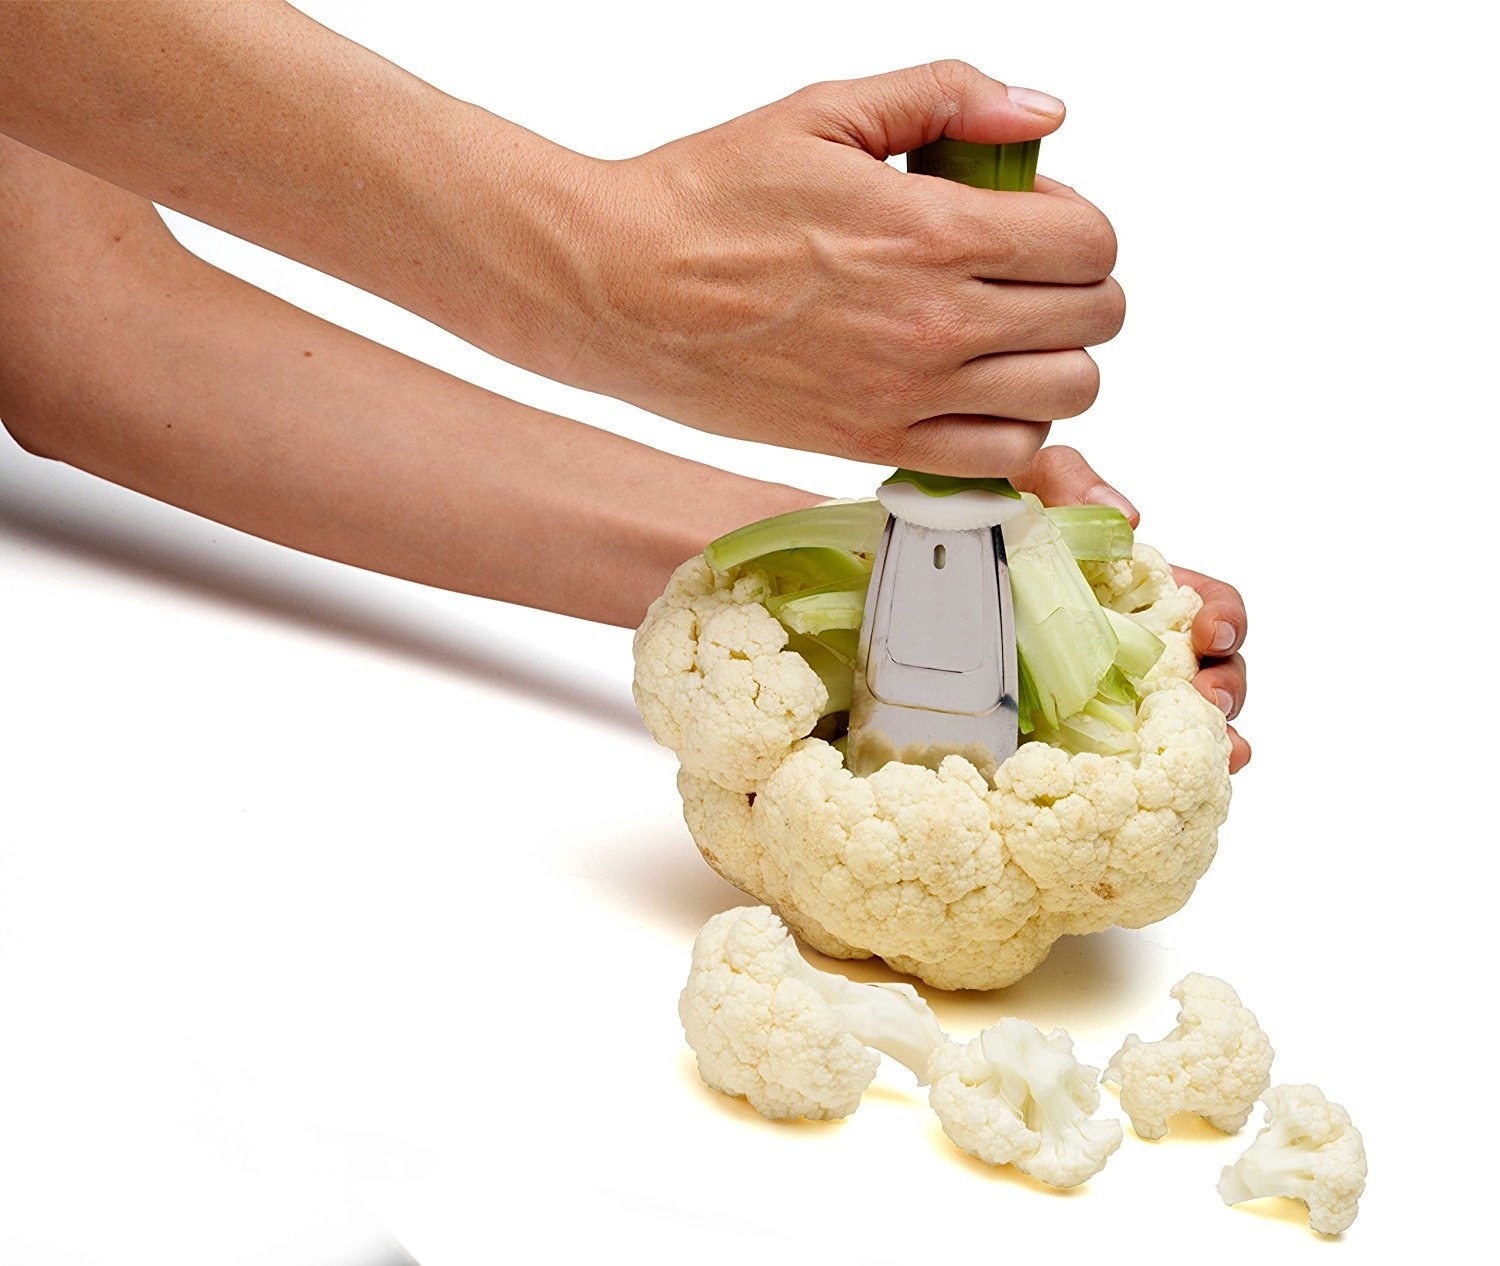 Hand using tool to chop cauliflower